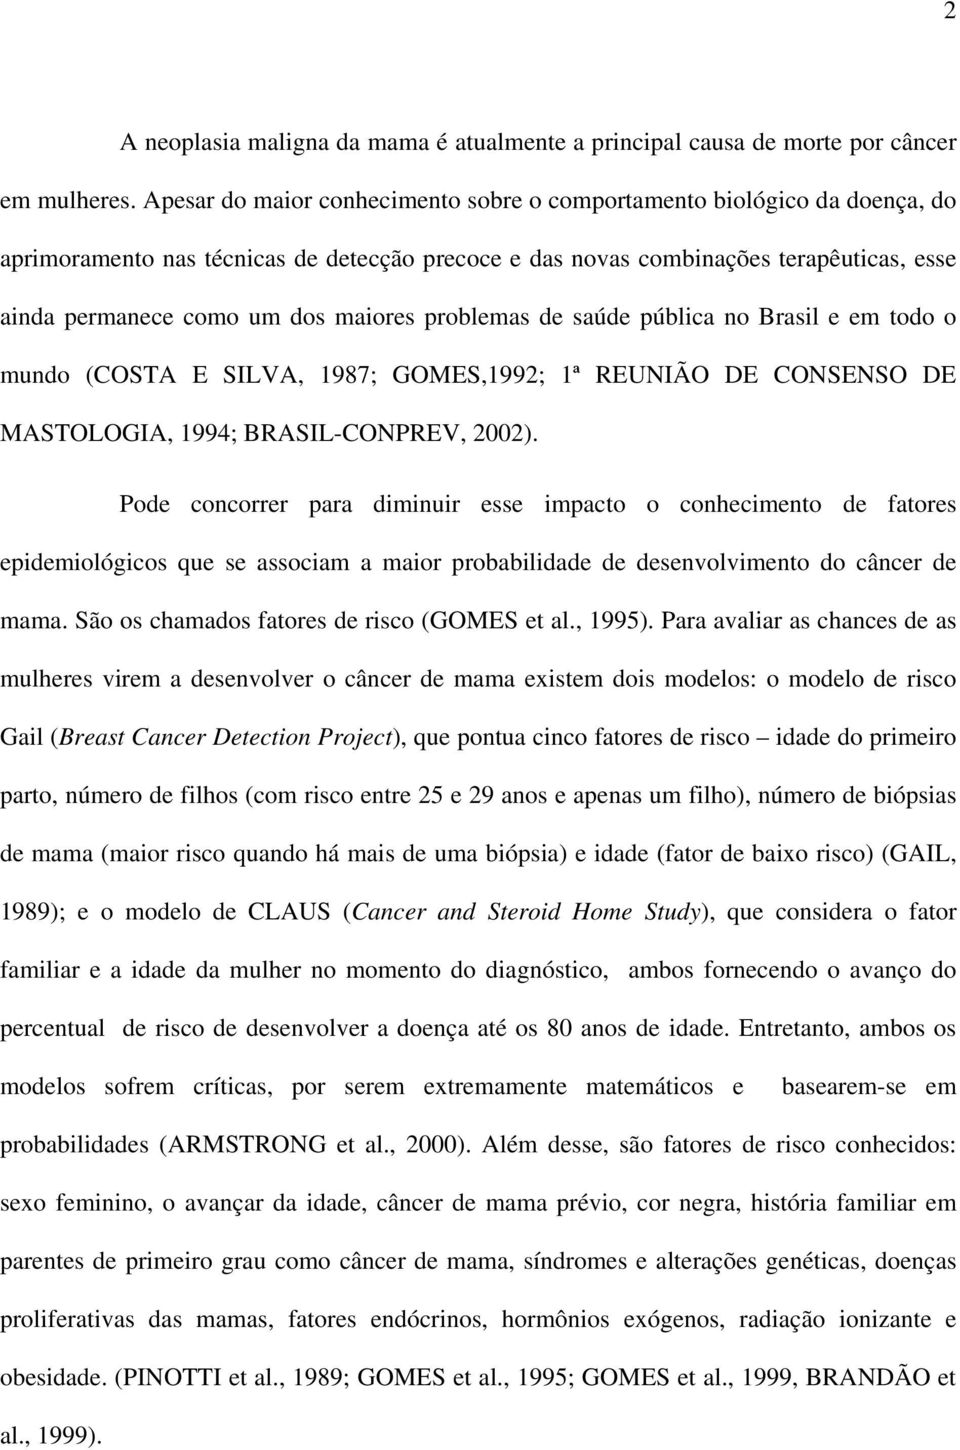 maiores problemas de saúde pública no Brasil e em todo o mundo (COSTA E SILVA, 1987; GOMES,1992; 1ª REUNIÃO DE CONSENSO DE MASTOLOGIA, 1994; BRASIL-CONPREV, 2002).